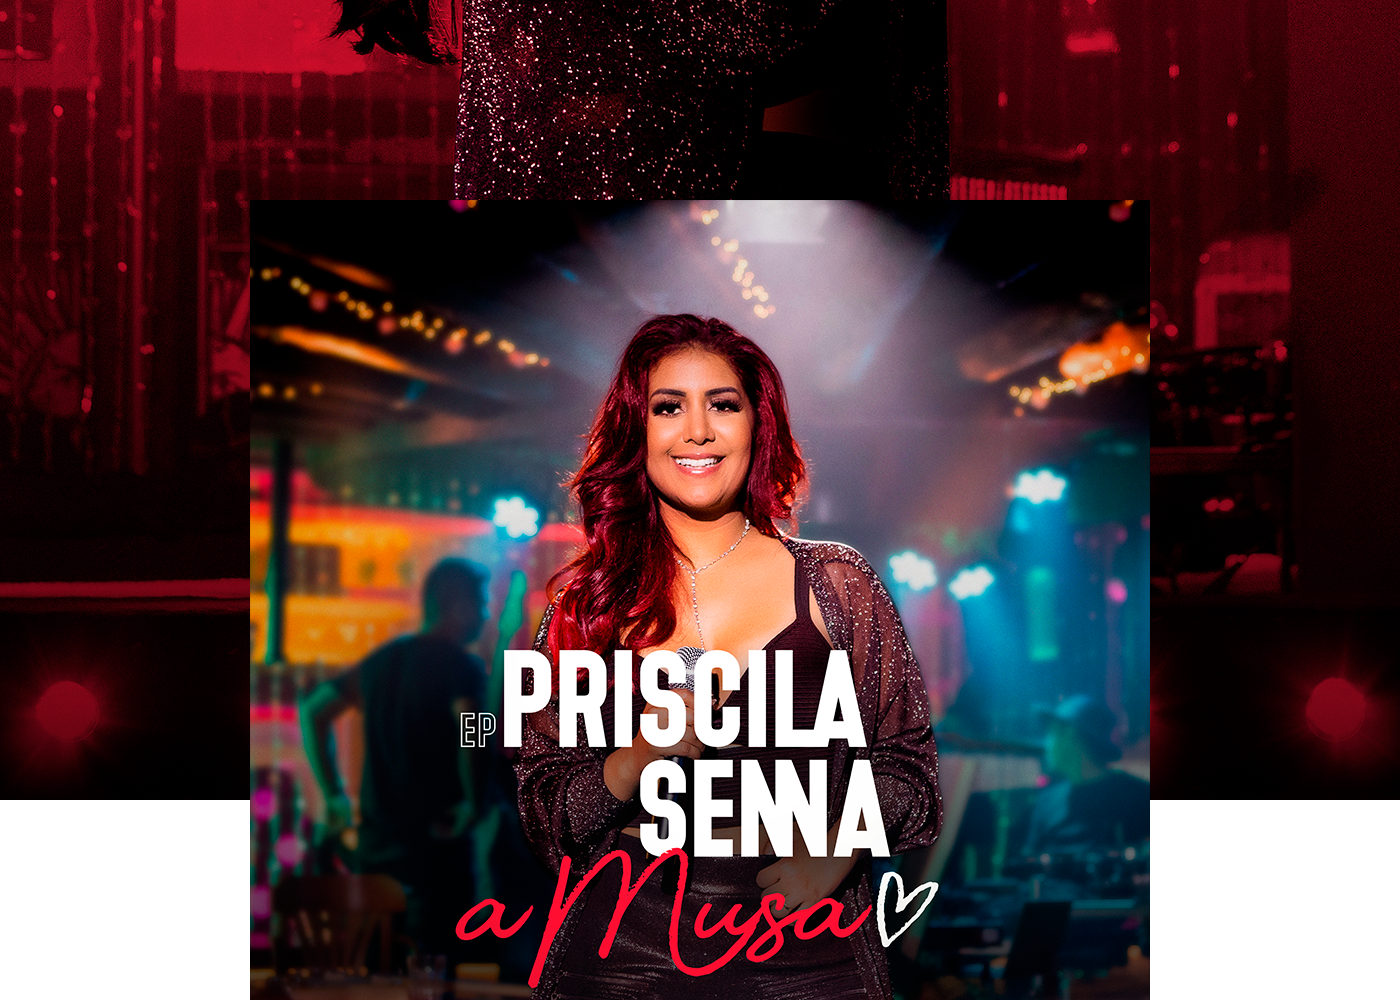 PRISCILA SENNA A MUSA ep ep cover Cover Art Capa